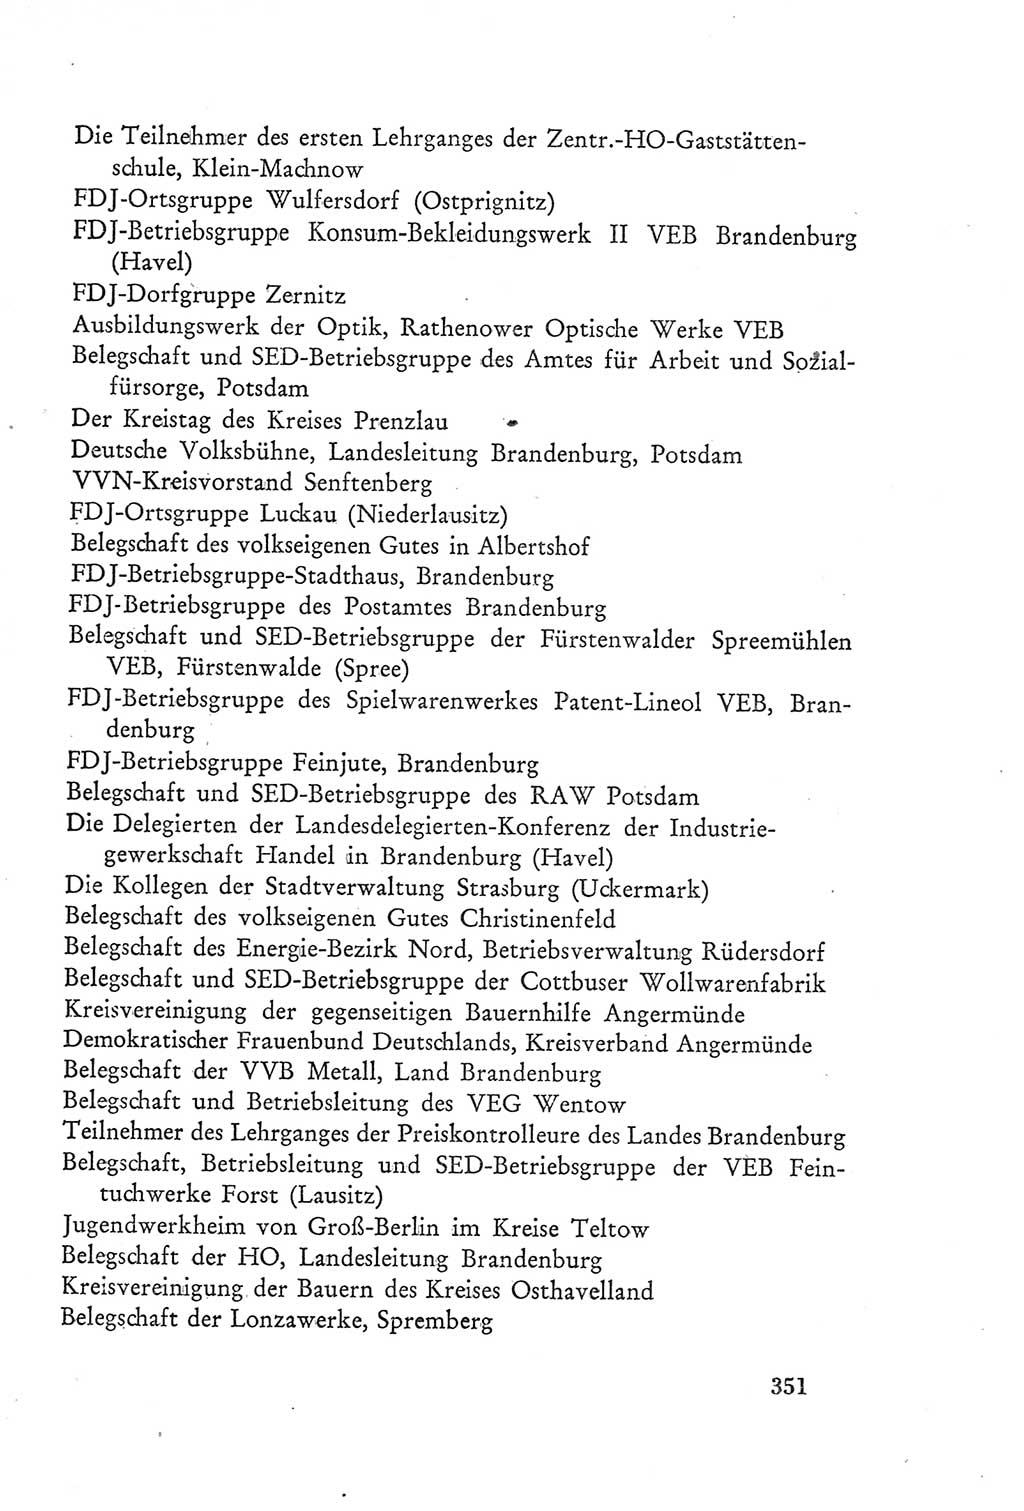 Protokoll der Verhandlungen des Ⅲ. Parteitages der Sozialistischen Einheitspartei Deutschlands (SED) [Deutsche Demokratische Republik (DDR)] 1950, Band 2, Seite 351 (Prot. Verh. Ⅲ. PT SED DDR 1950, Bd. 2, S. 351)